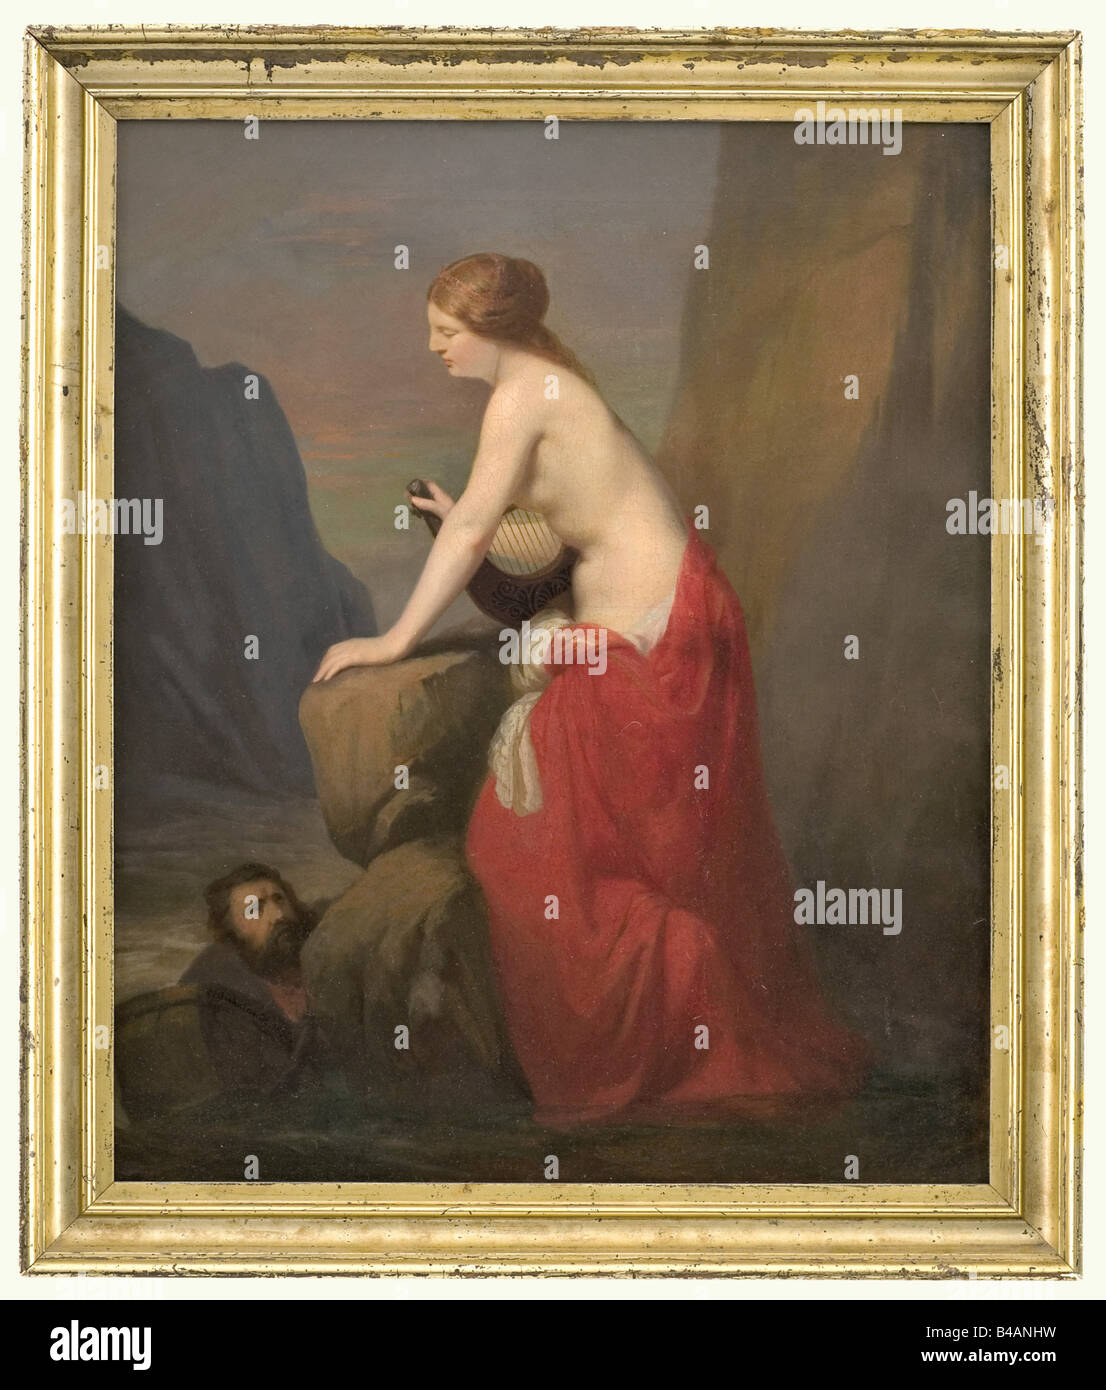 Carl Suhrlandt (1828 - 1919) - Lorelei, firmada y fechada en 1856. Óleo sobre lienzo. En el centro de la pintura Lorelei despojado a la cintura con una lira y un manto envuelto alrededor de su cintura en un acantilado paisaje, a la izquierda un mariner subir a ella. Firmada y Fechada en el ángulo inferior izquierdo. Superficie crujió ligeramente, en un marco embellecedor dorados. Tamaño de la imagen de 50 x 62 cm, enmarcado 59 x 70 cm. Suhrlandt vinieron de la Alta Baviera, era un estudiante de Scheffer en París y miembro de las academias en Kopenhagen y San Petersburgo. Tras largas estancias en el extranjero se asentó i Copyright del artista no ha de ser borrado Foto de stock